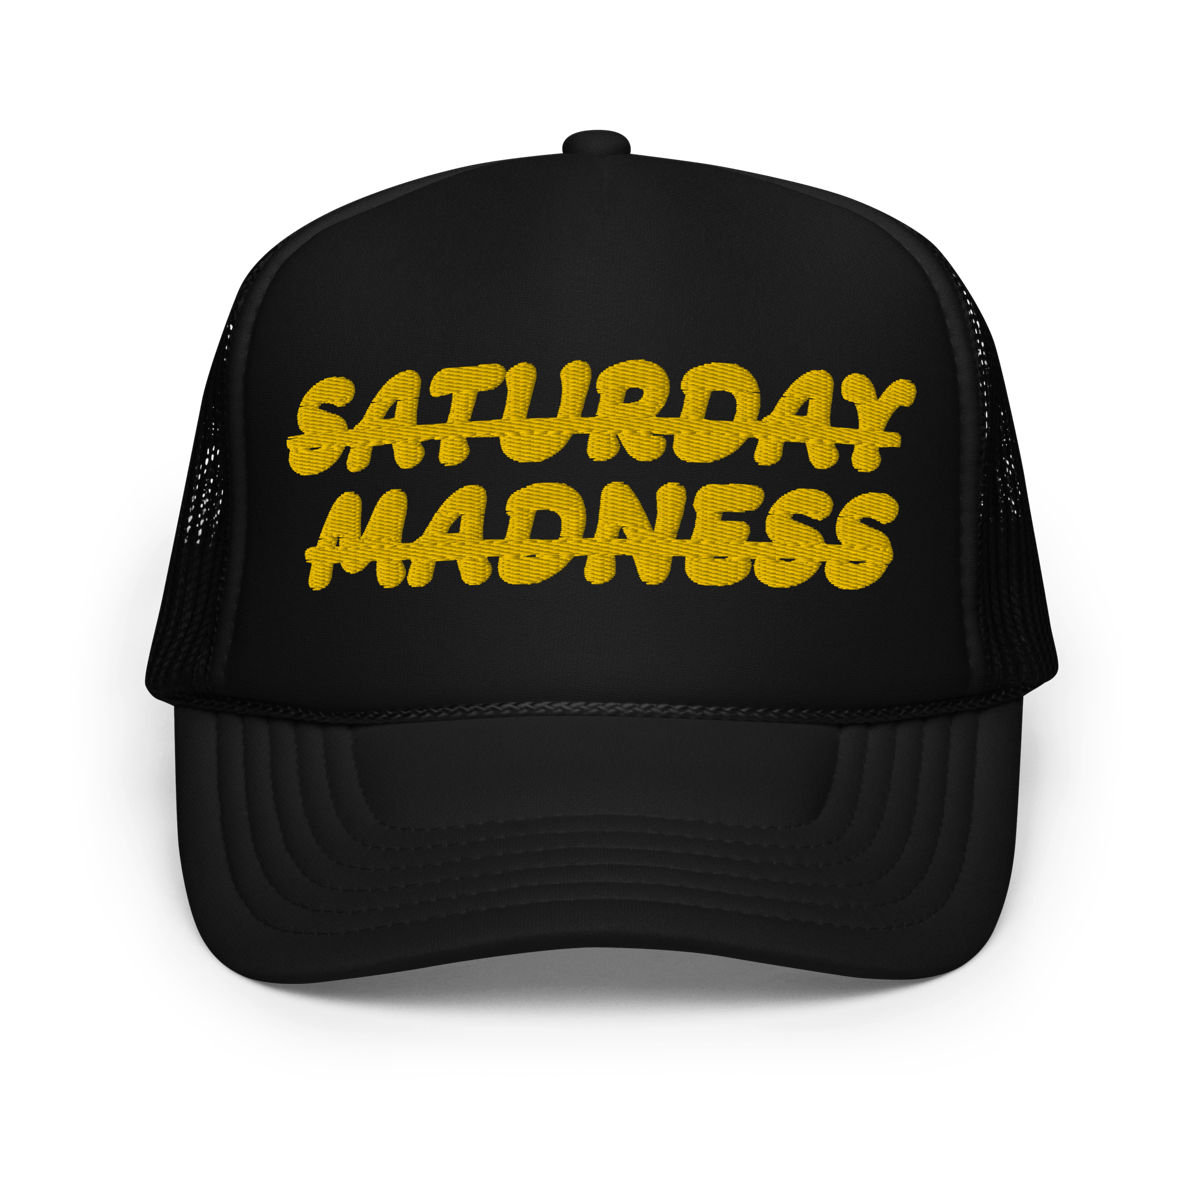 Saturday Madness Trucker Hat | SEMINAR RAP